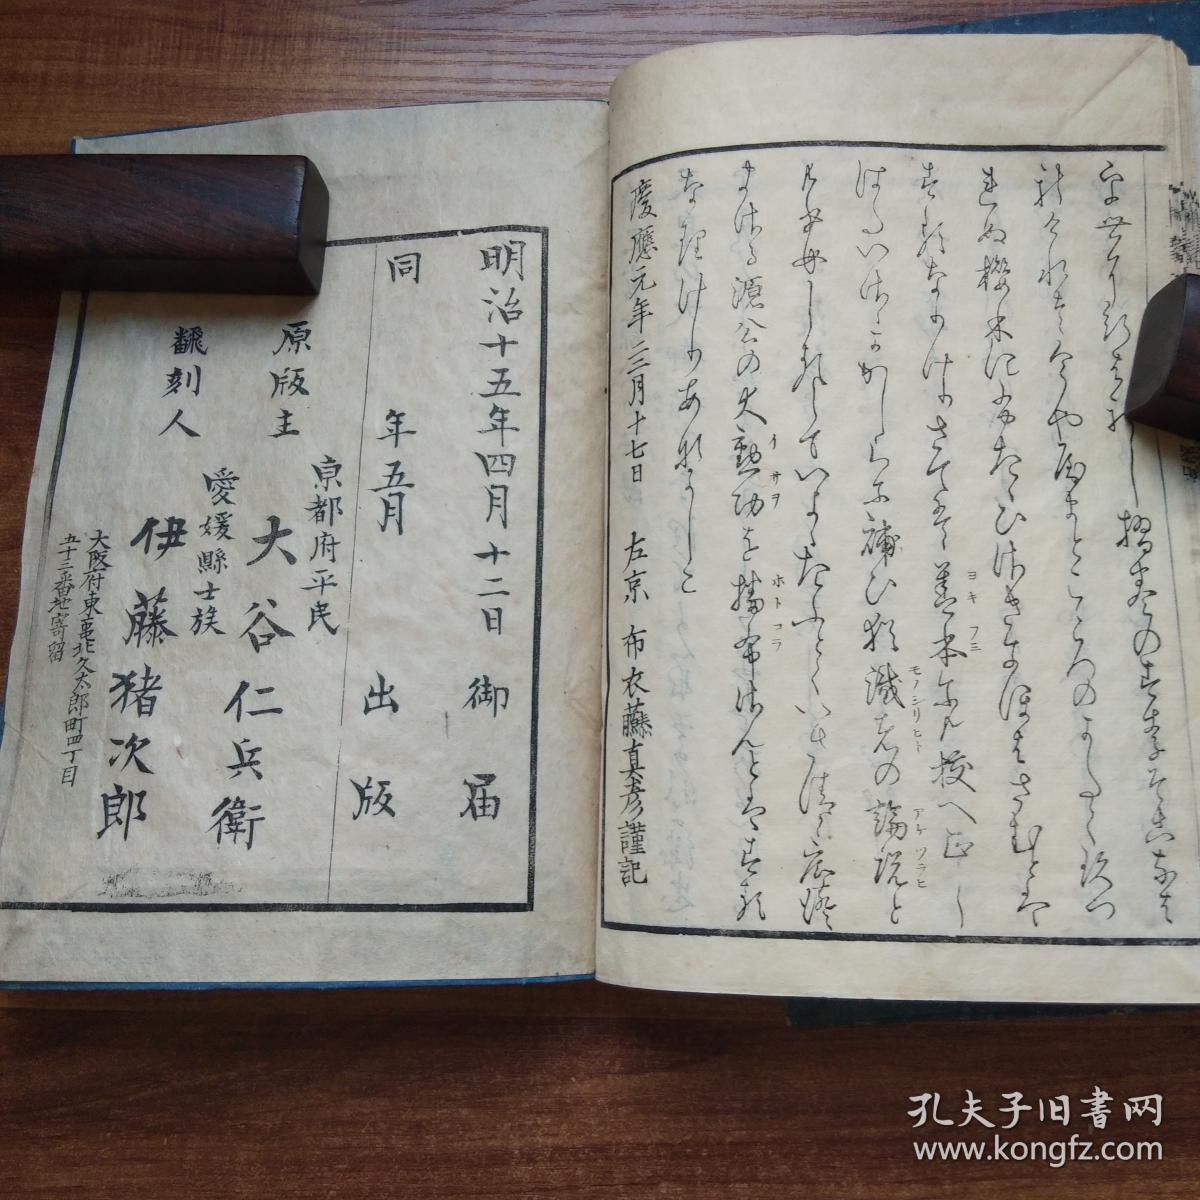 孔网稀见  《神皇正统记》6册全（第4册是配本） 明治15年（1882年）出版   上面部分汉文，下面是日文